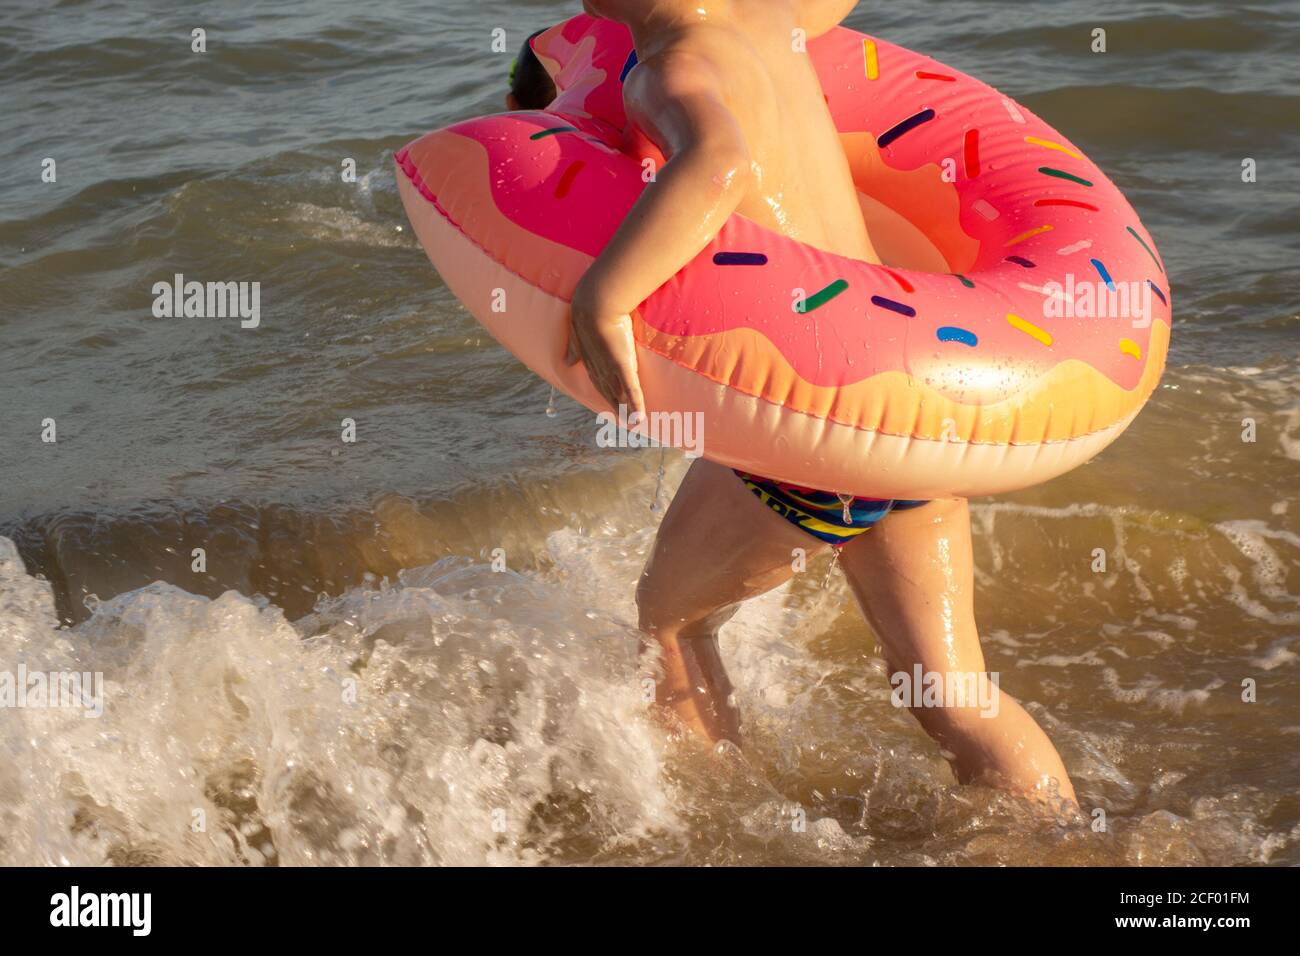 Un ragazzo di 5 anni nuota in mare, si rallegra e si diverte in un anello gonfiabile a forma di ciambella. Foto Stock